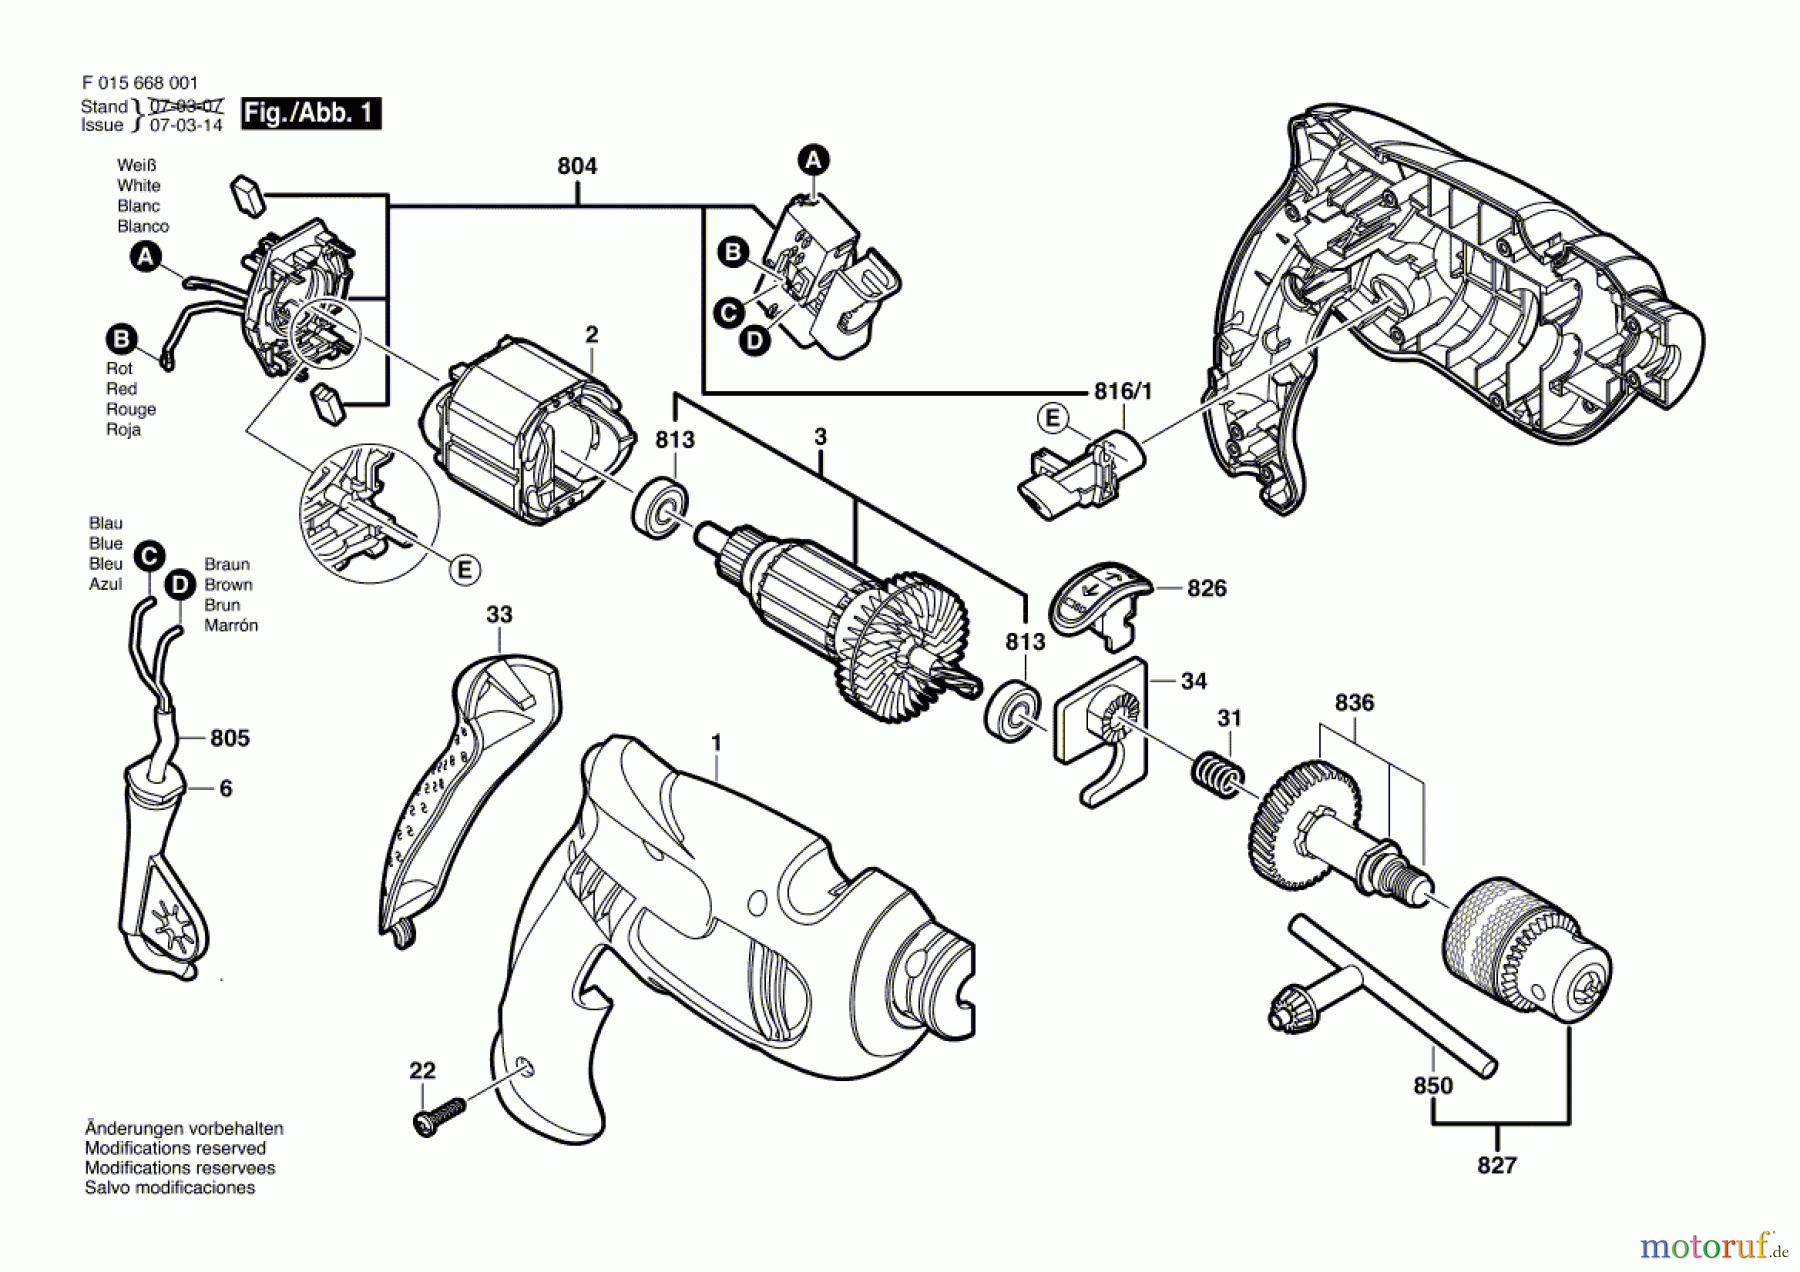  Bosch Werkzeug Schlagbohrmaschine 6680 Seite 1